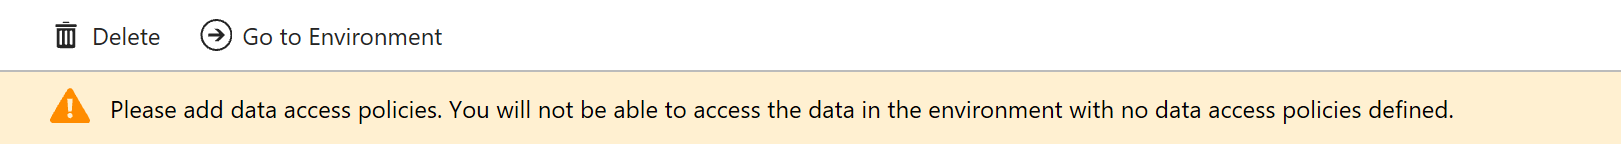 Data Access Policy Error_